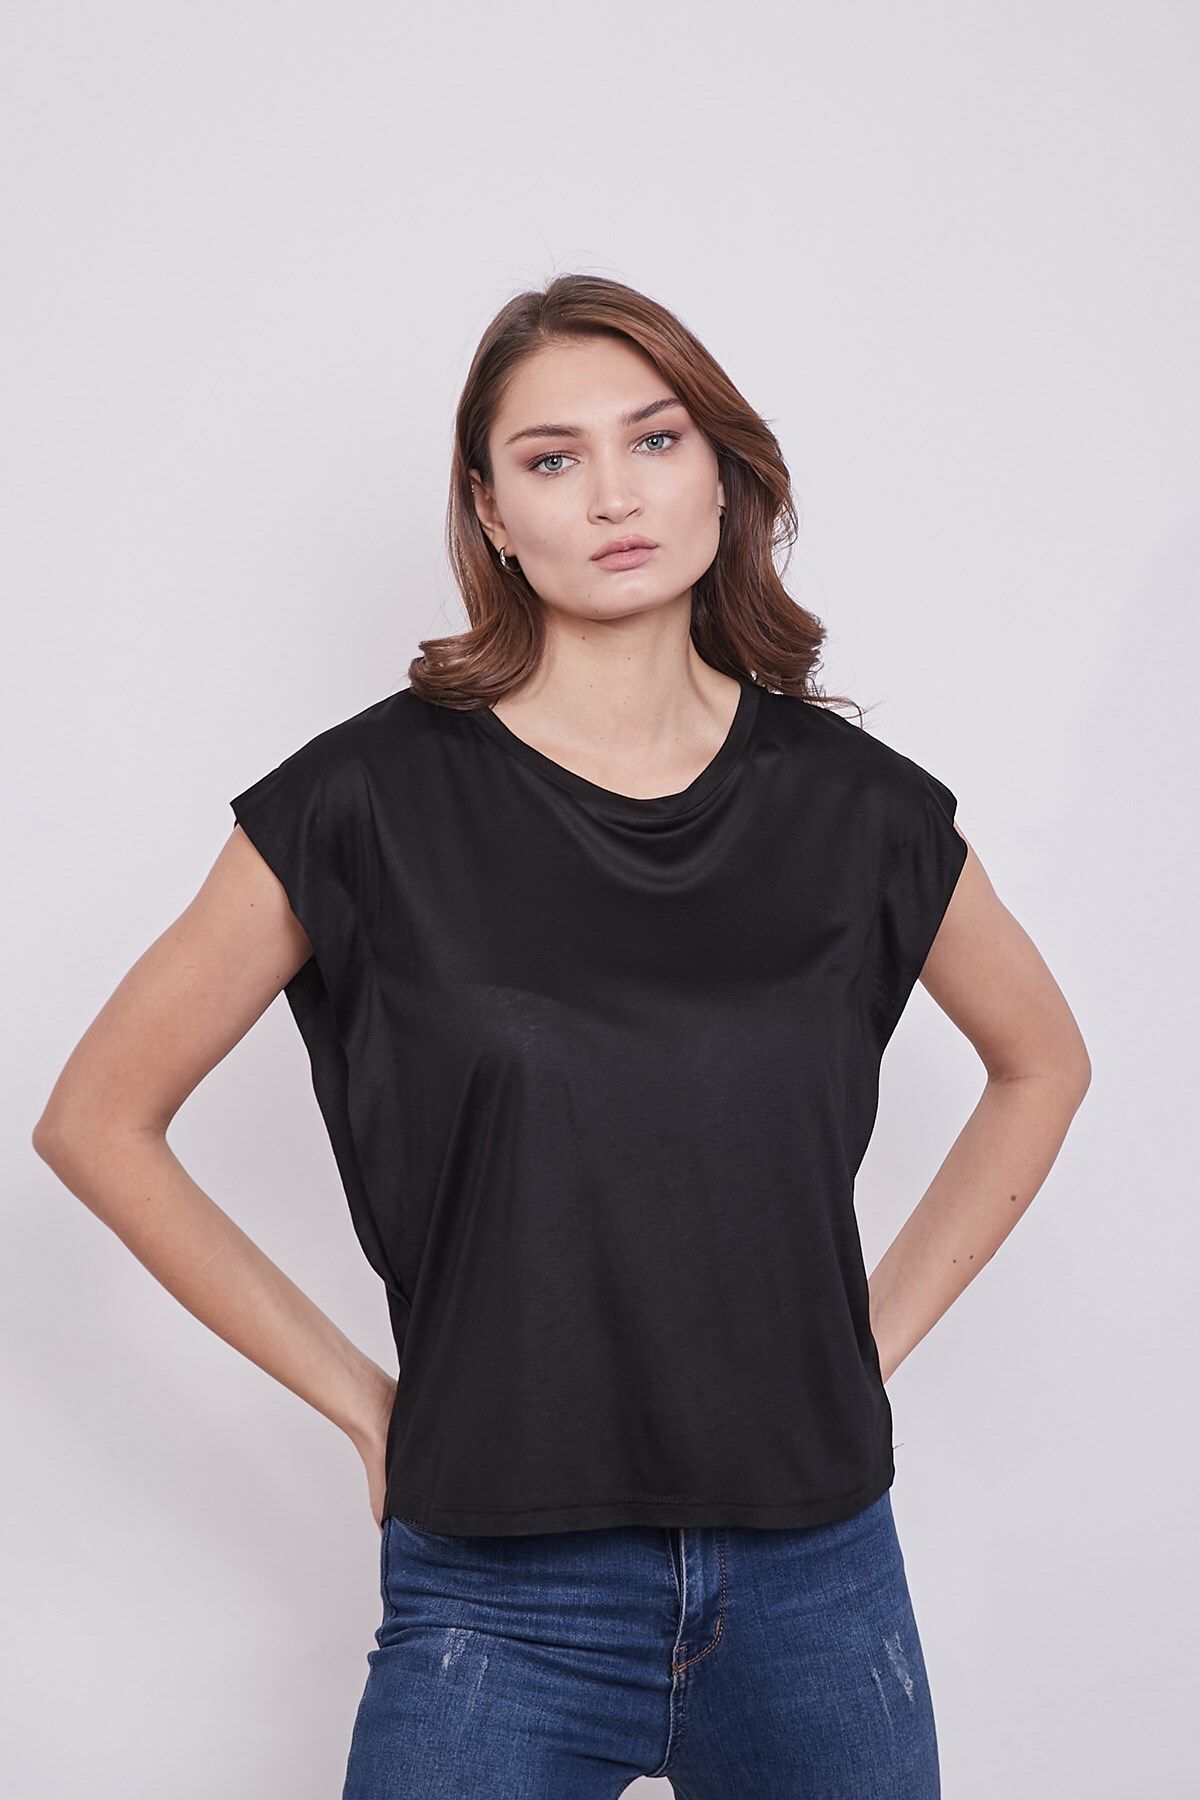 Jument Lycrasız Pamuklu Geniş Sıfır Yaka Düşük Omuz T-shirt-siyah